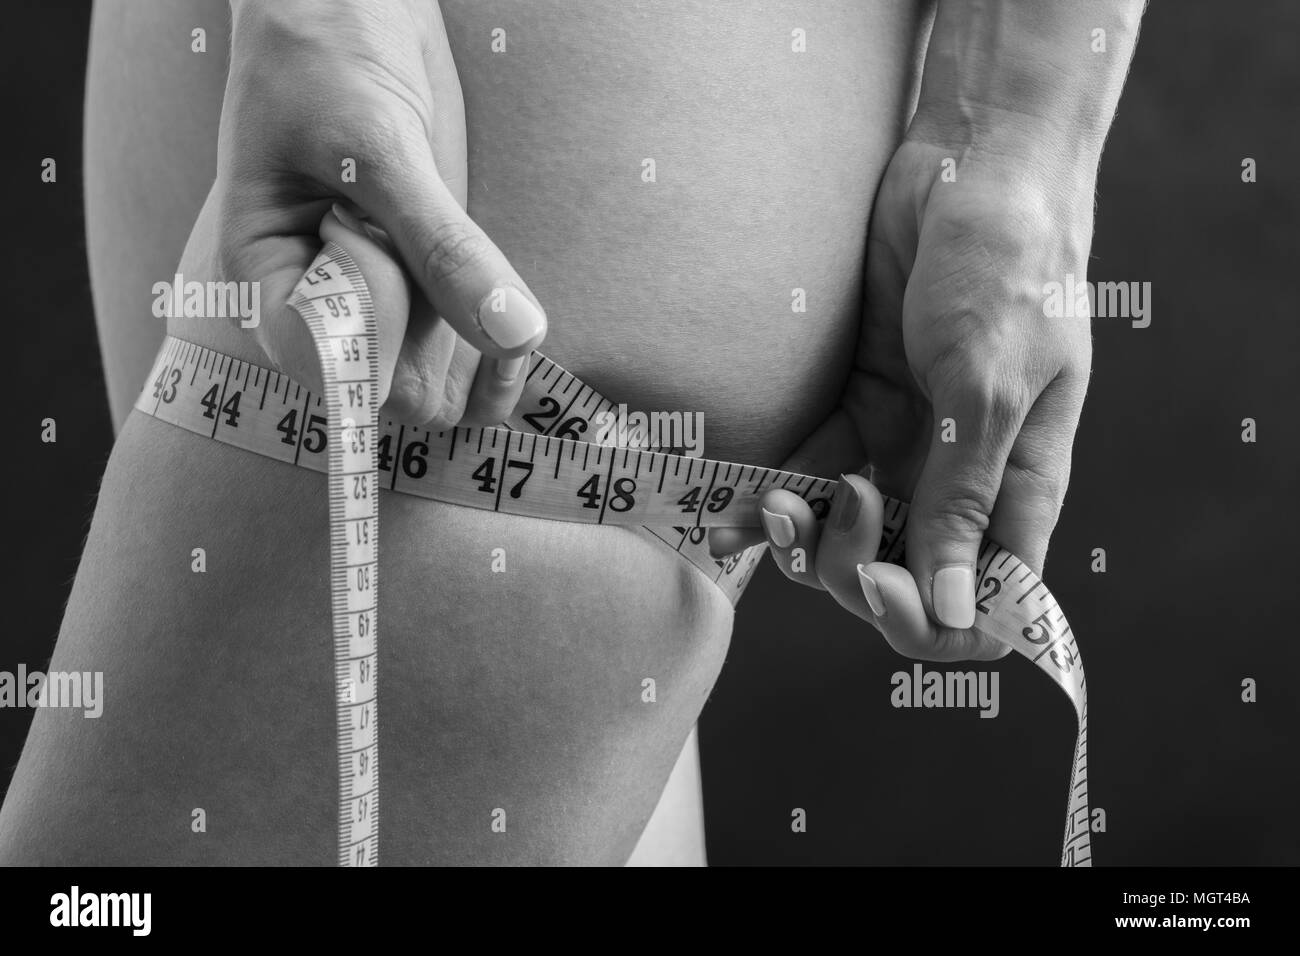 Jeune femme triste vérifier sa hanche gras avec de la bande, monochrome Banque D'Images